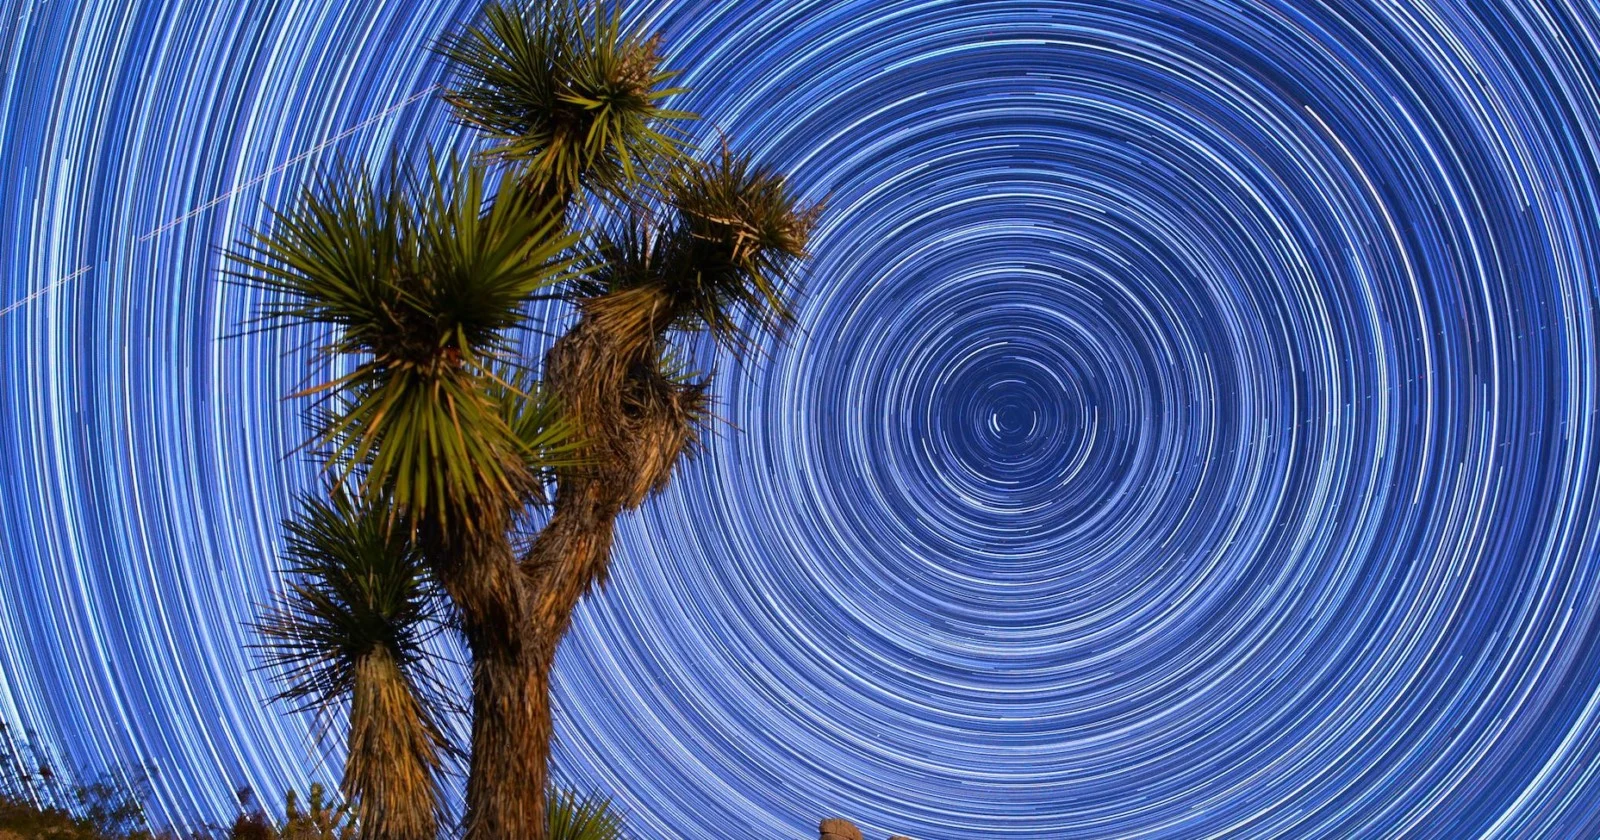 Mojave Çölü'nde yıldızlar ve dolunay eşliğinde muazzam bir timelapse! OTOMOBİL